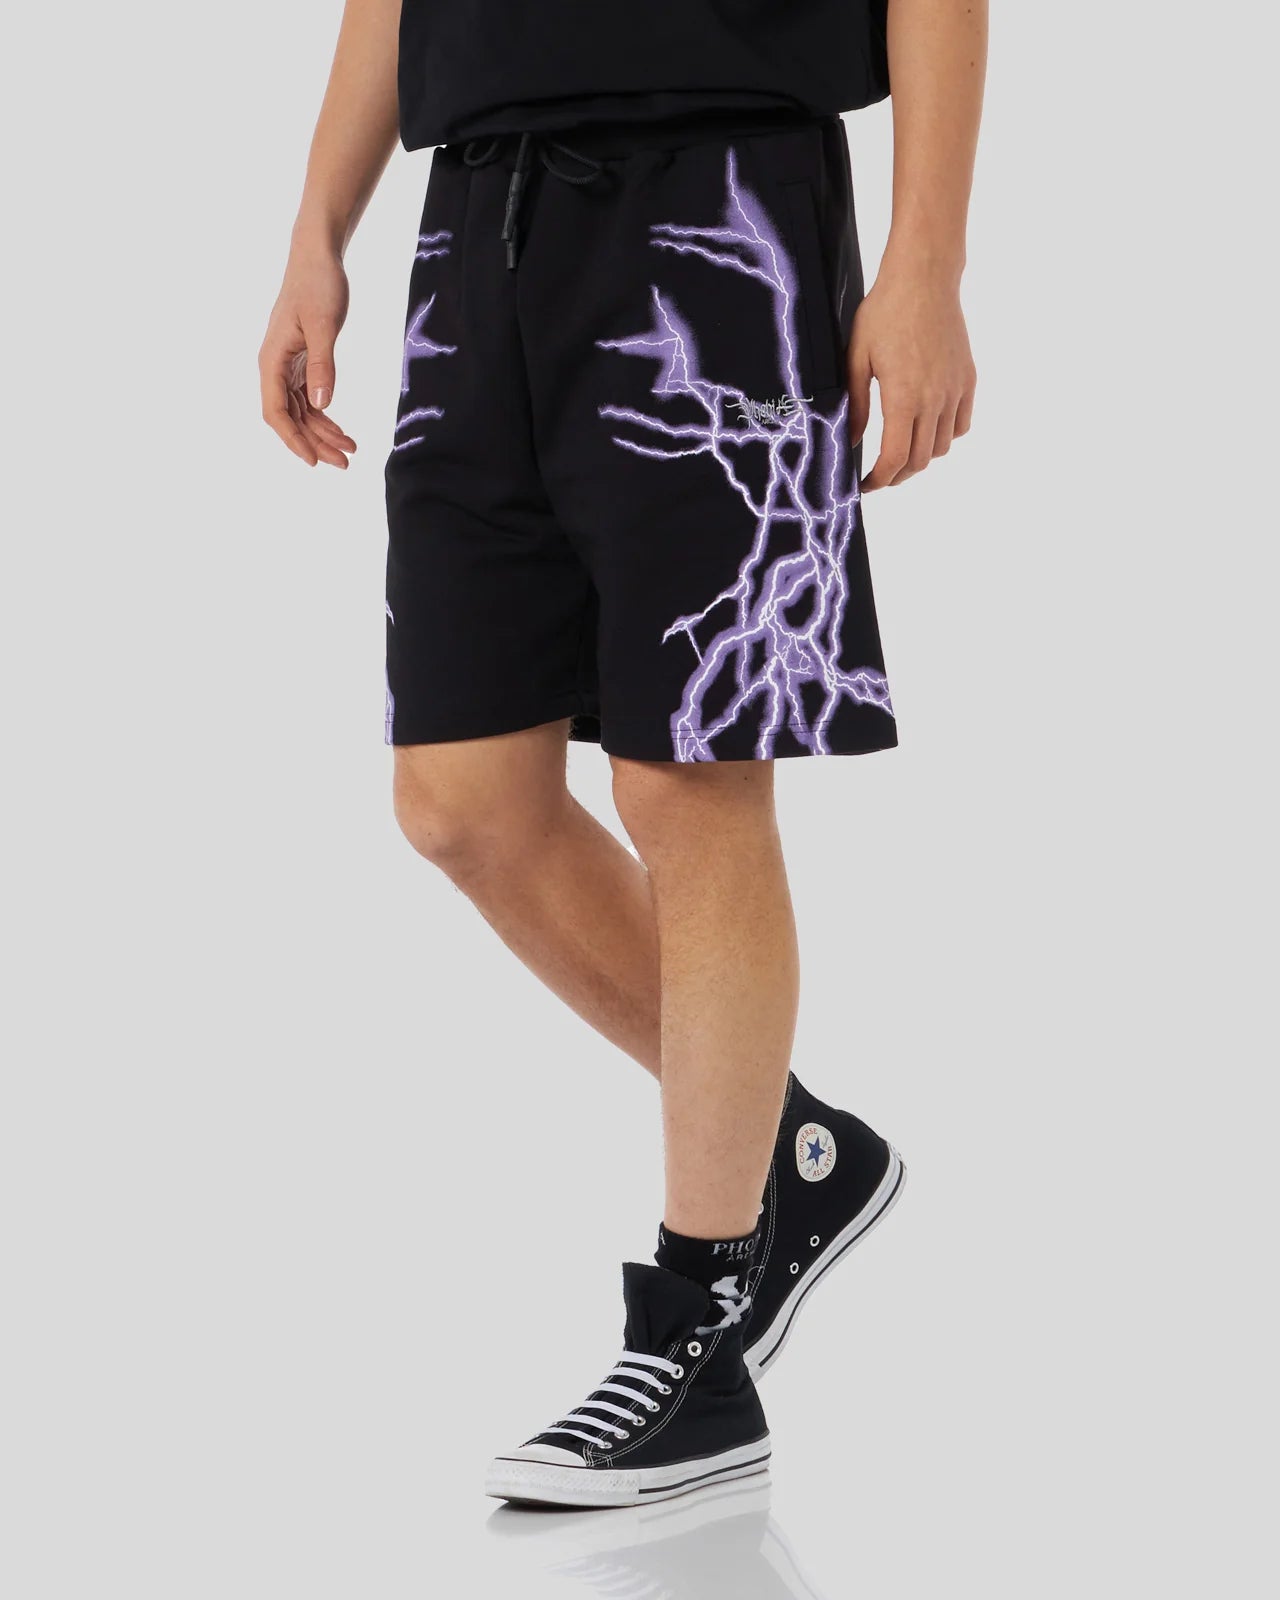 Pantaloncino Phobia nero con fulmini laterali viola